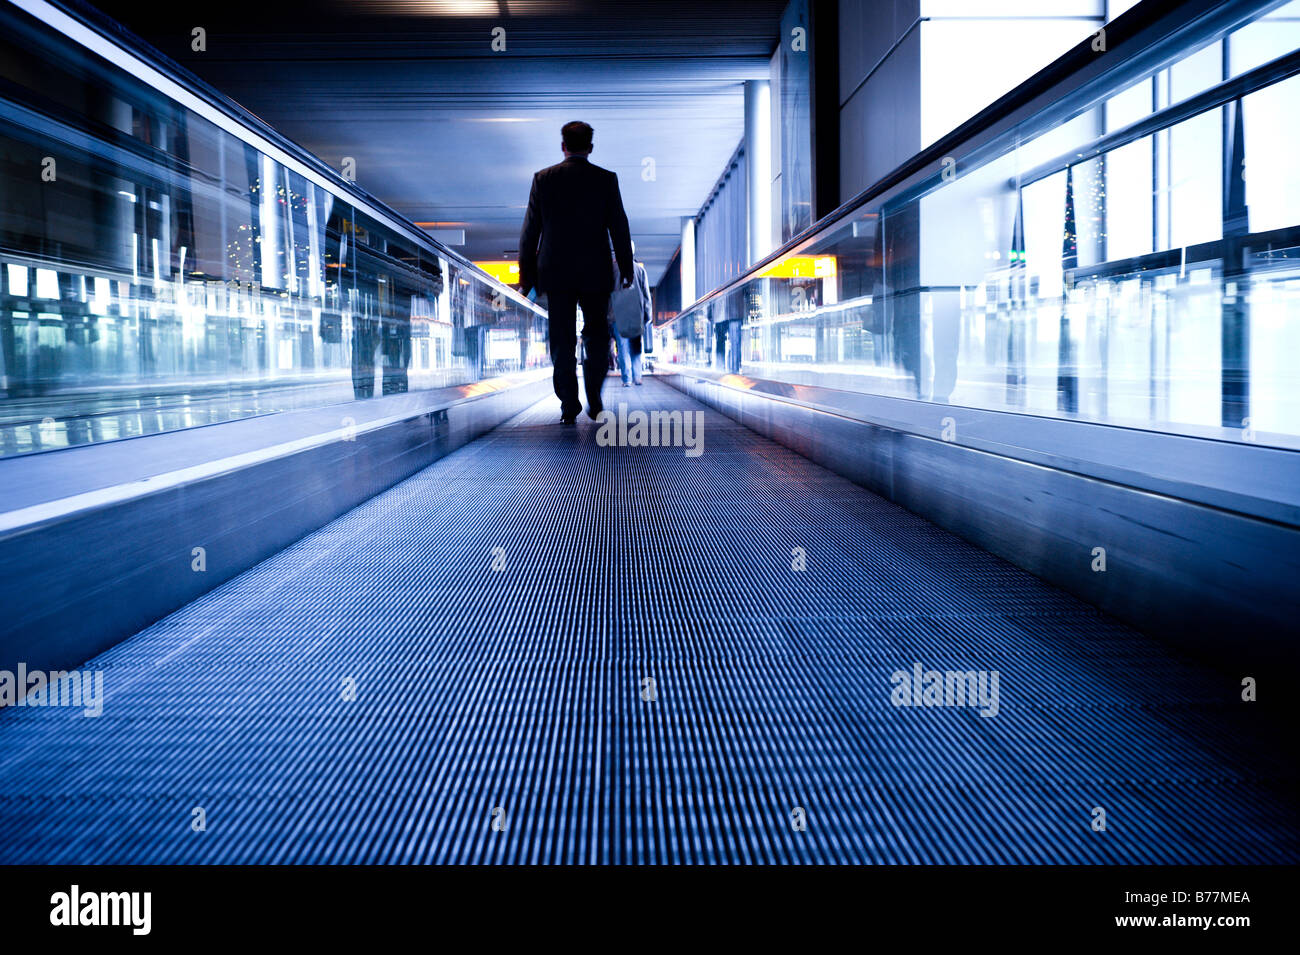 Viaggio astratta immagine di un uomo su una scala mobile in movimento Foto Stock